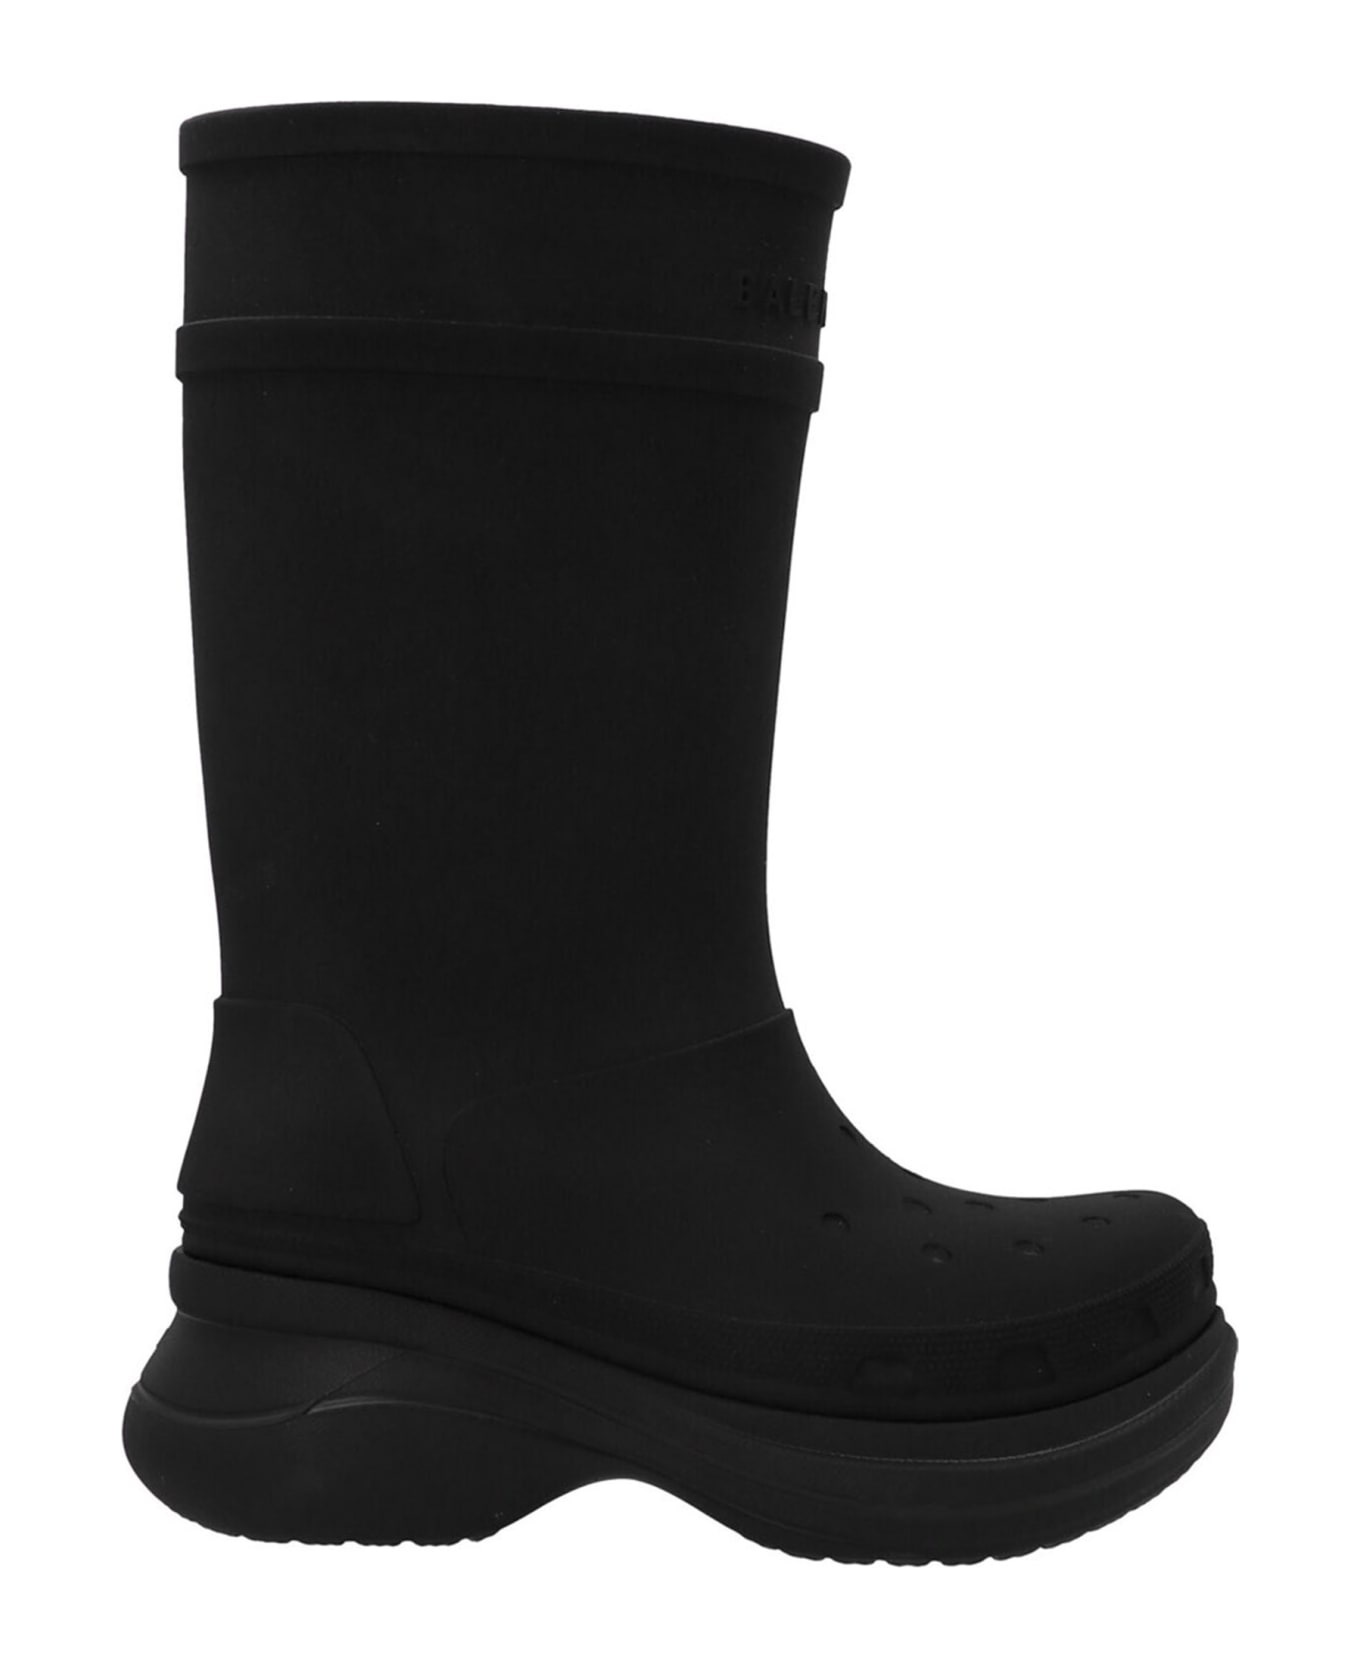 Balenciaga X Crocs Boots - 1